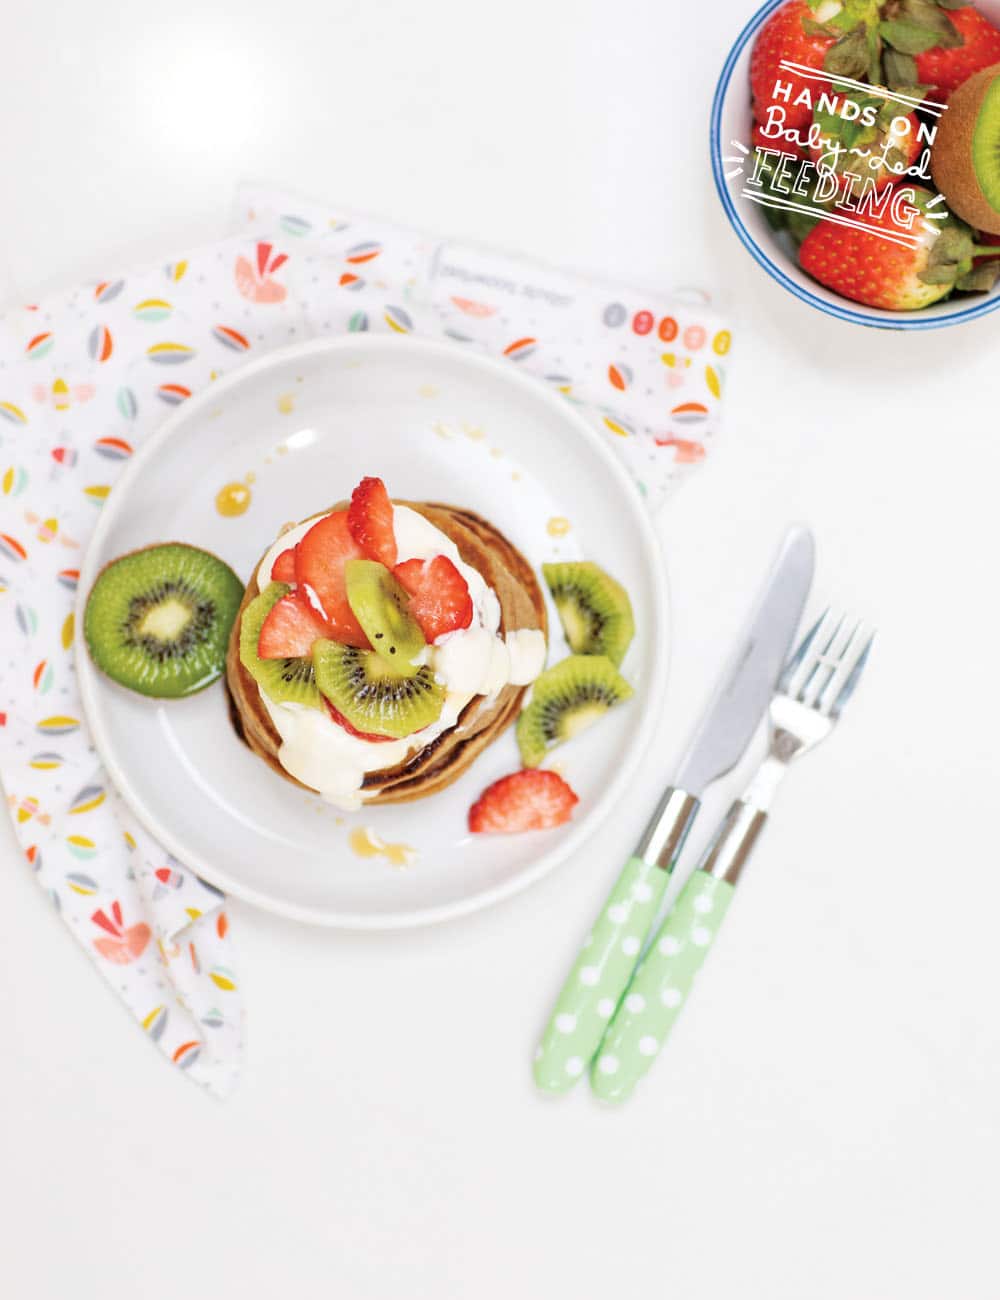 Baby Led Feeding Oat and Banana Pancakes with Yogurt Recipe Images3